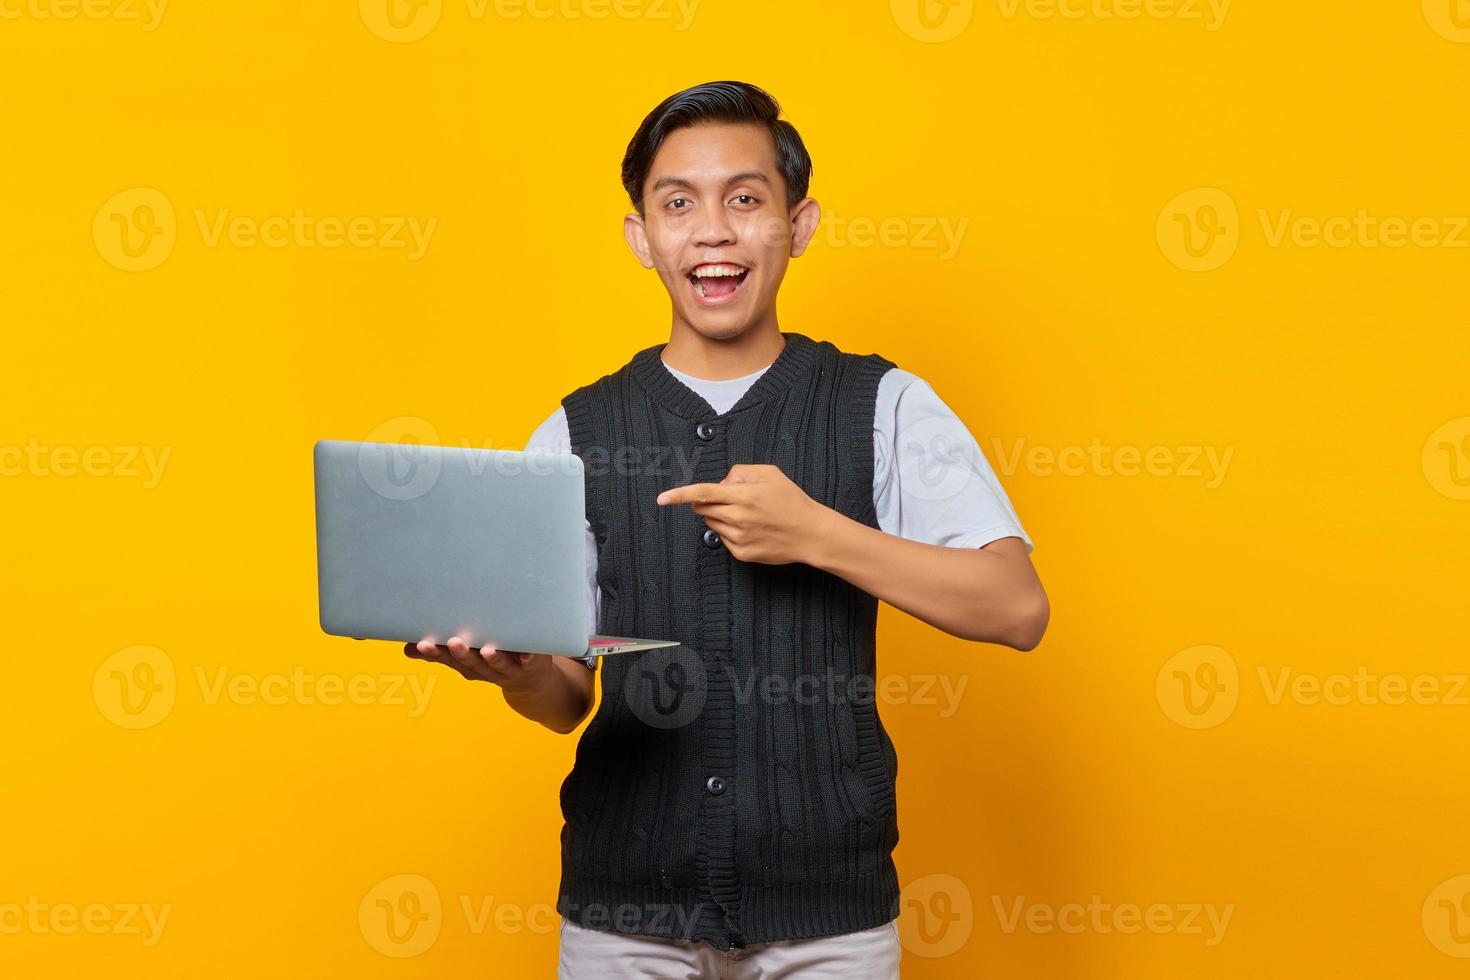 jovem bonito animado apontando para um laptop sobre fundo amarelo foto